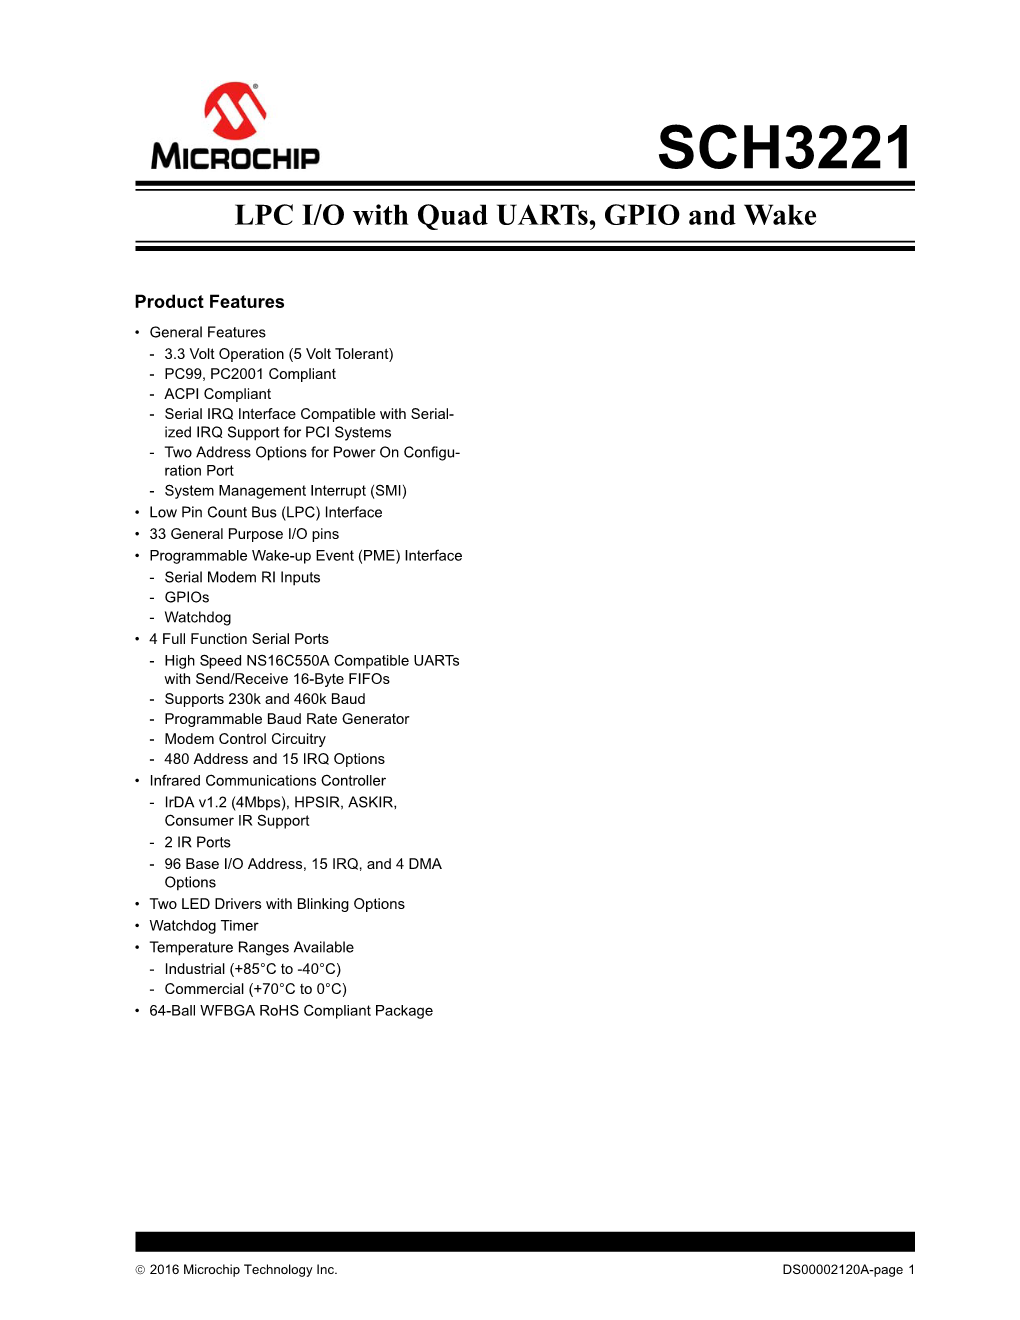 SCH3221 Data Sheet